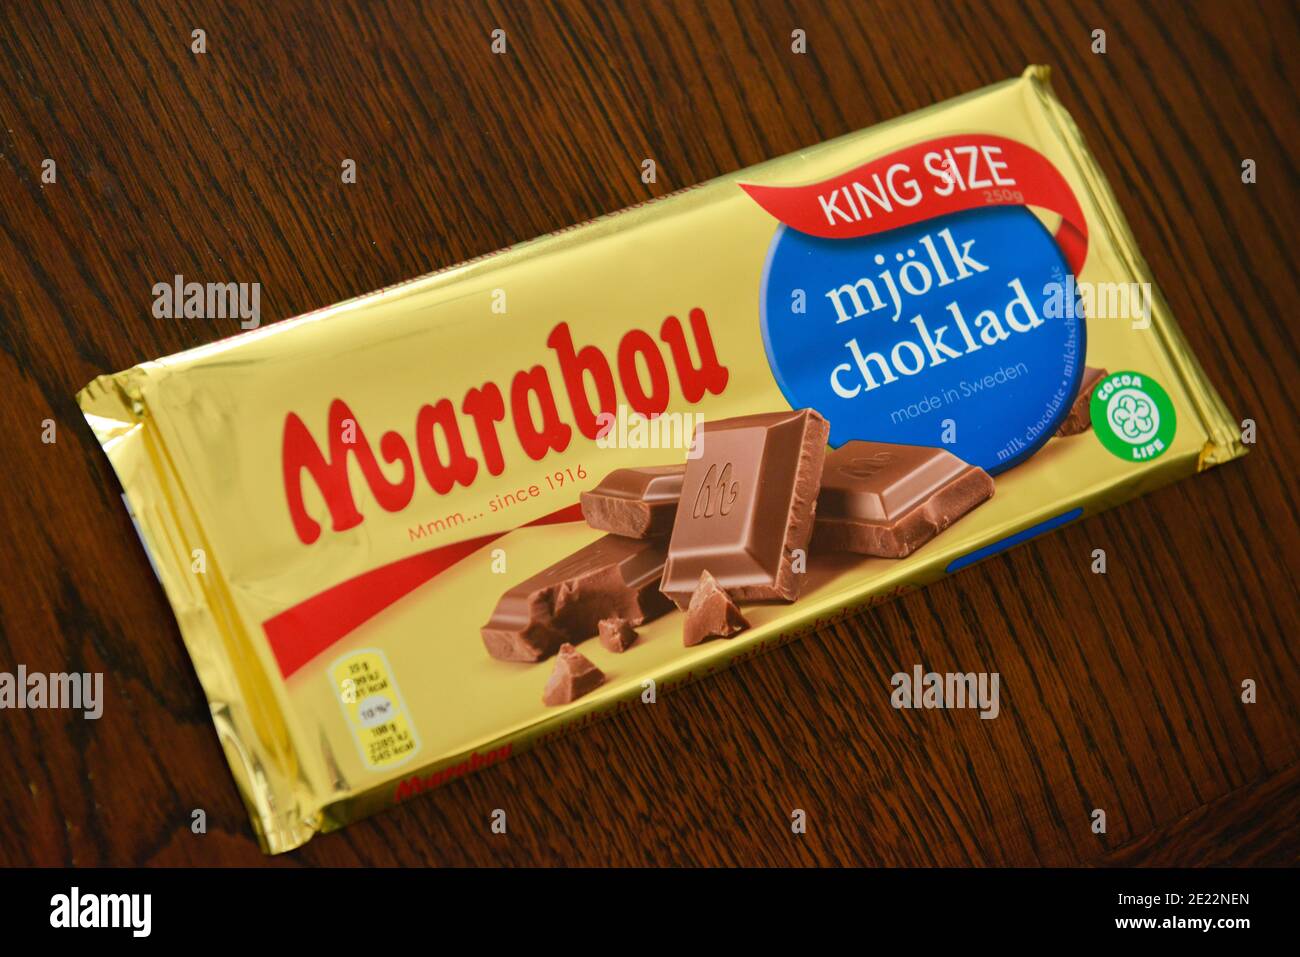 Marabou Schokolade Stock Photo